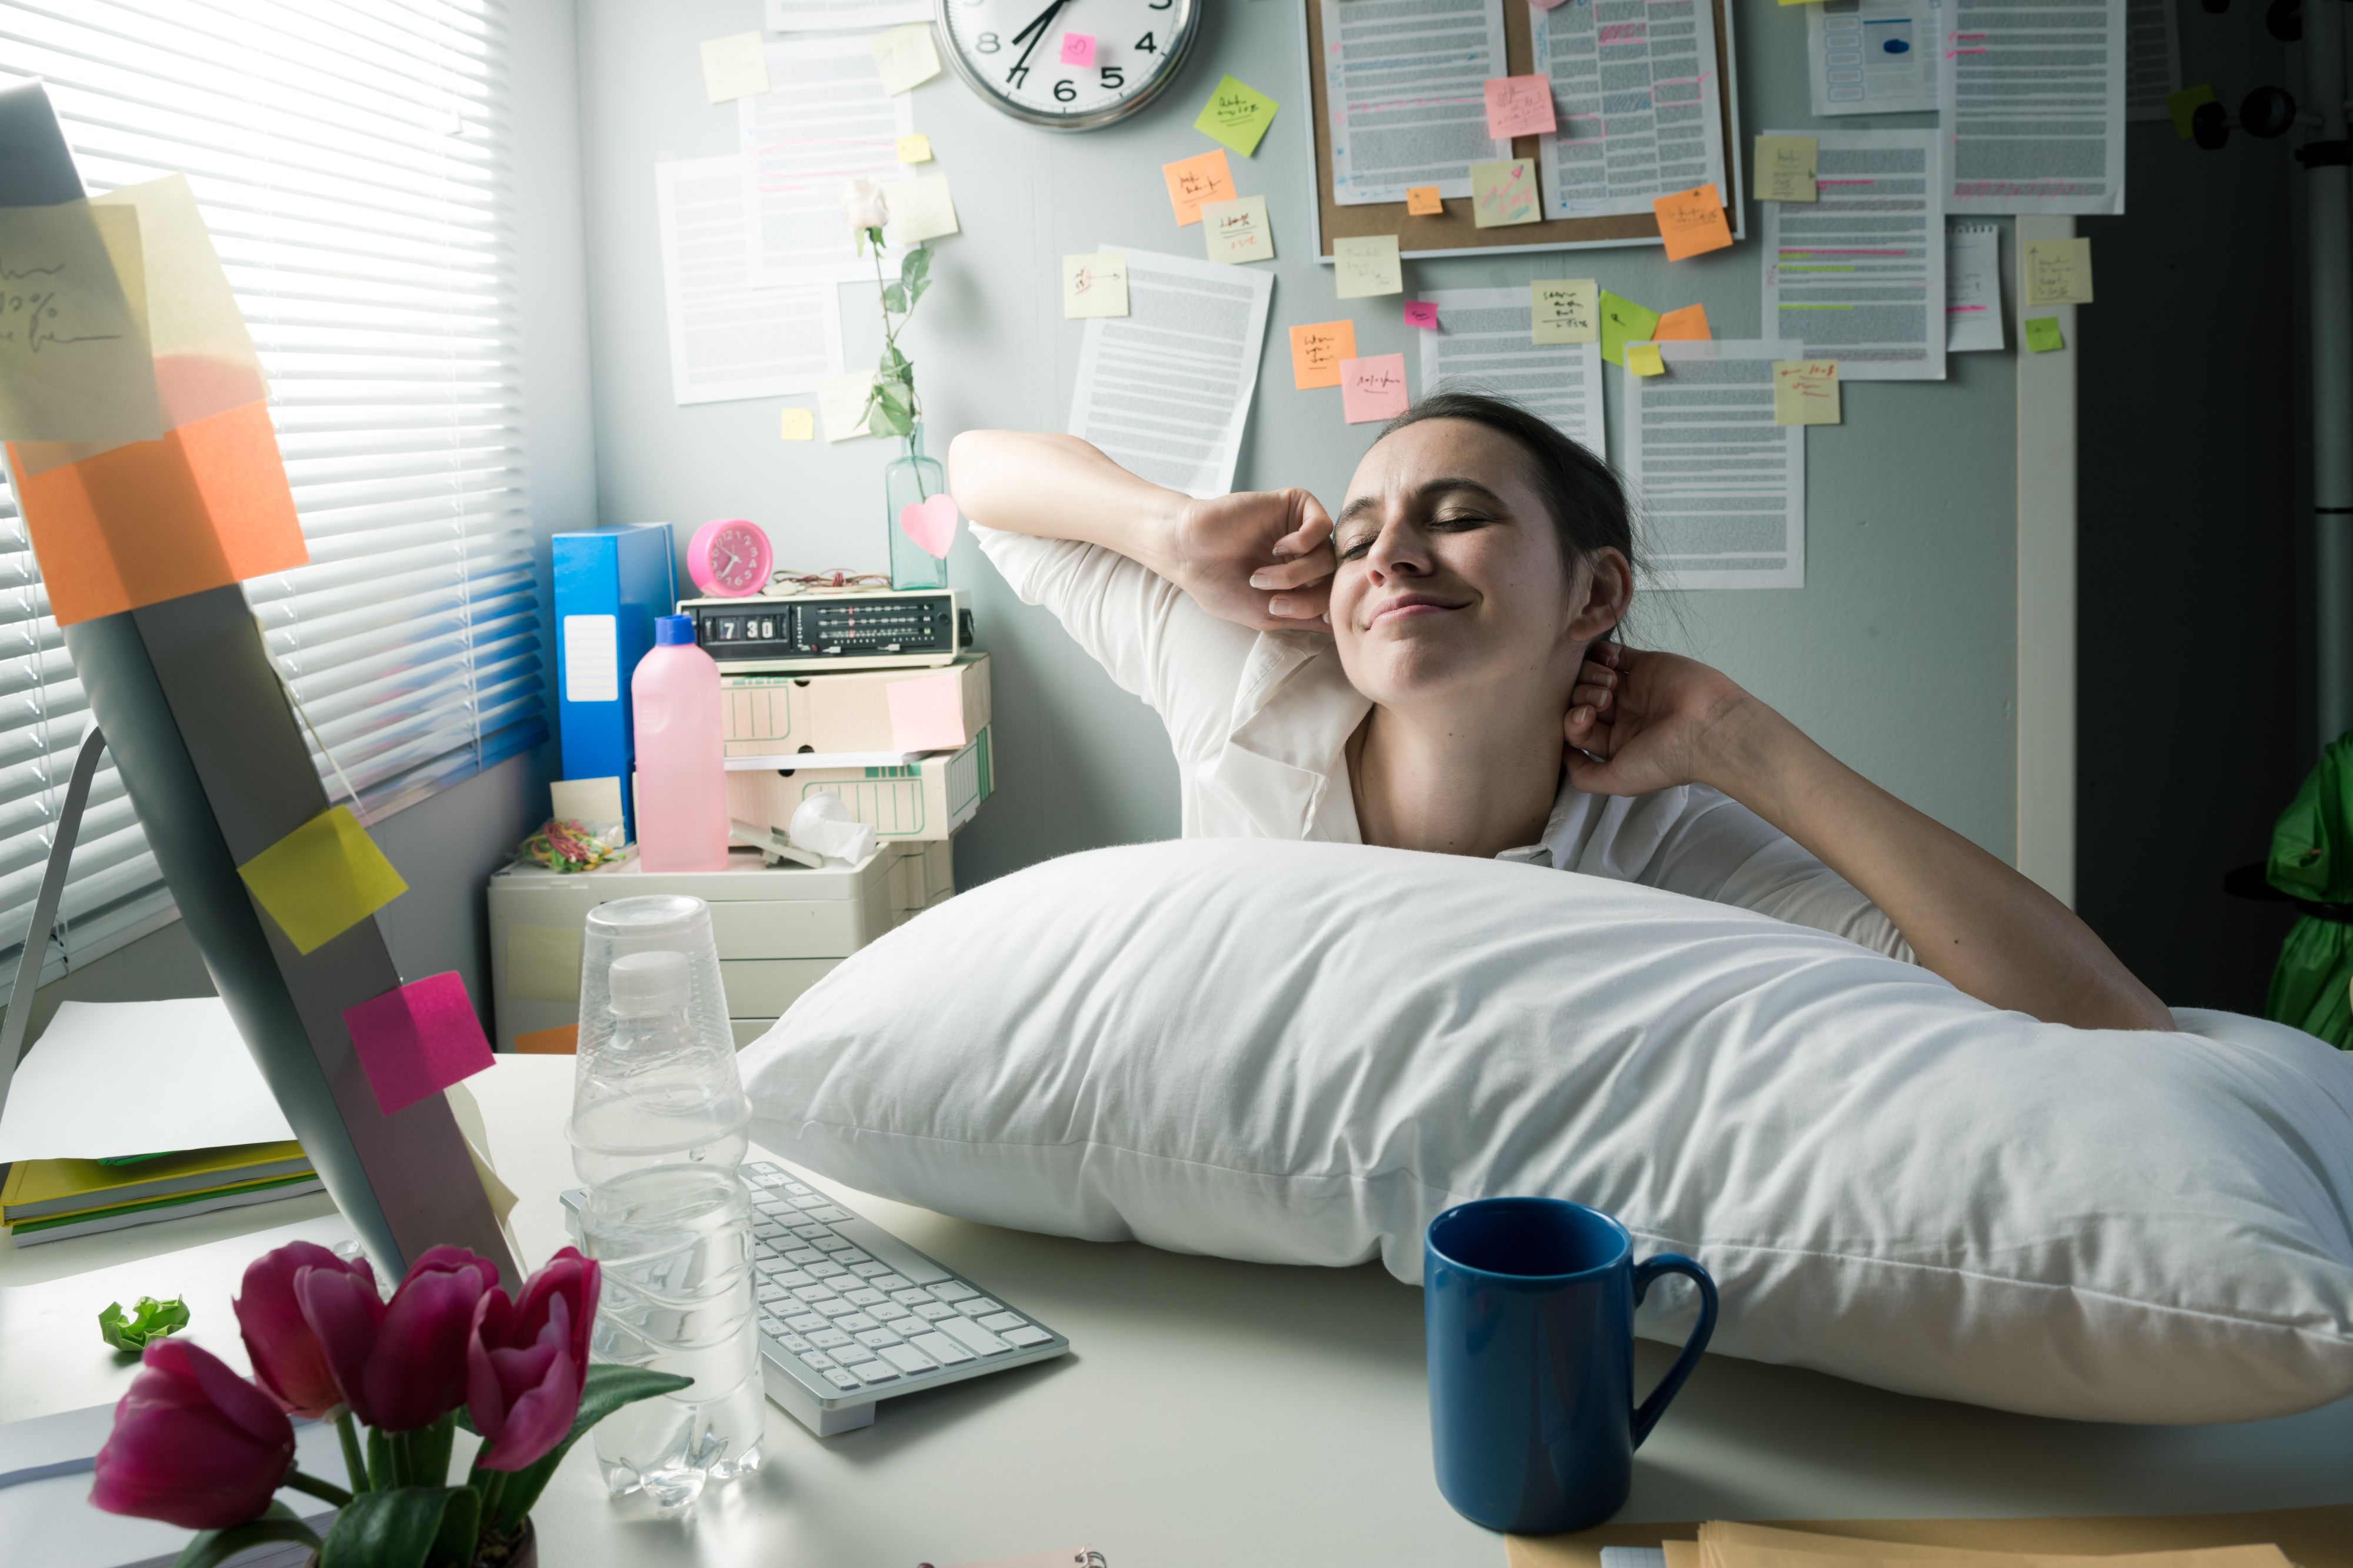 Firmy mogą zachęcać pracowników do drzemki w ciągu dnia (Fot. Shutterstock)